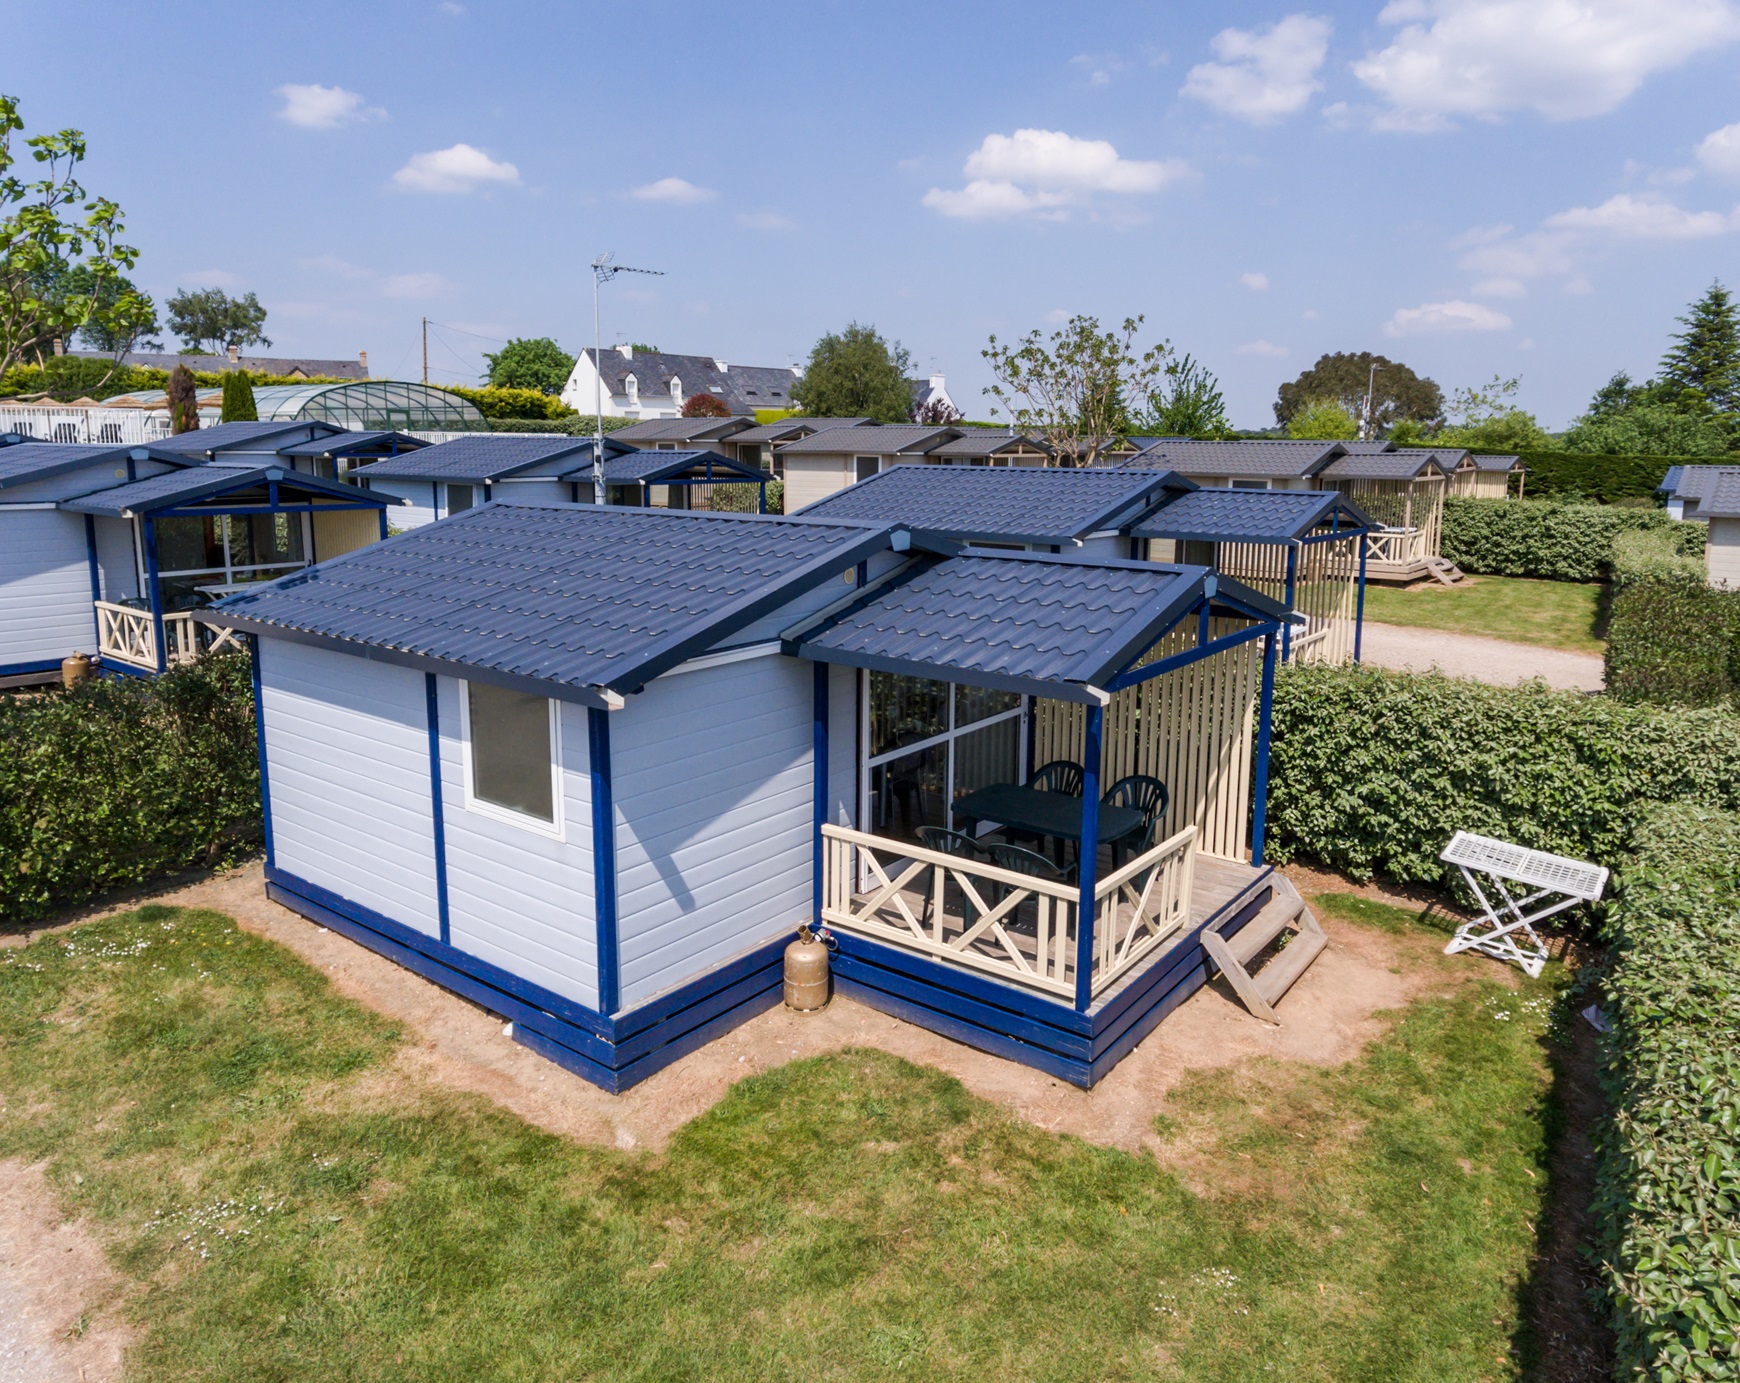 Location - Chalet Standard 20 M² (2 Chambres) Avec Terrasse Couverte +Tv - Camping Les Jardins de Kergal